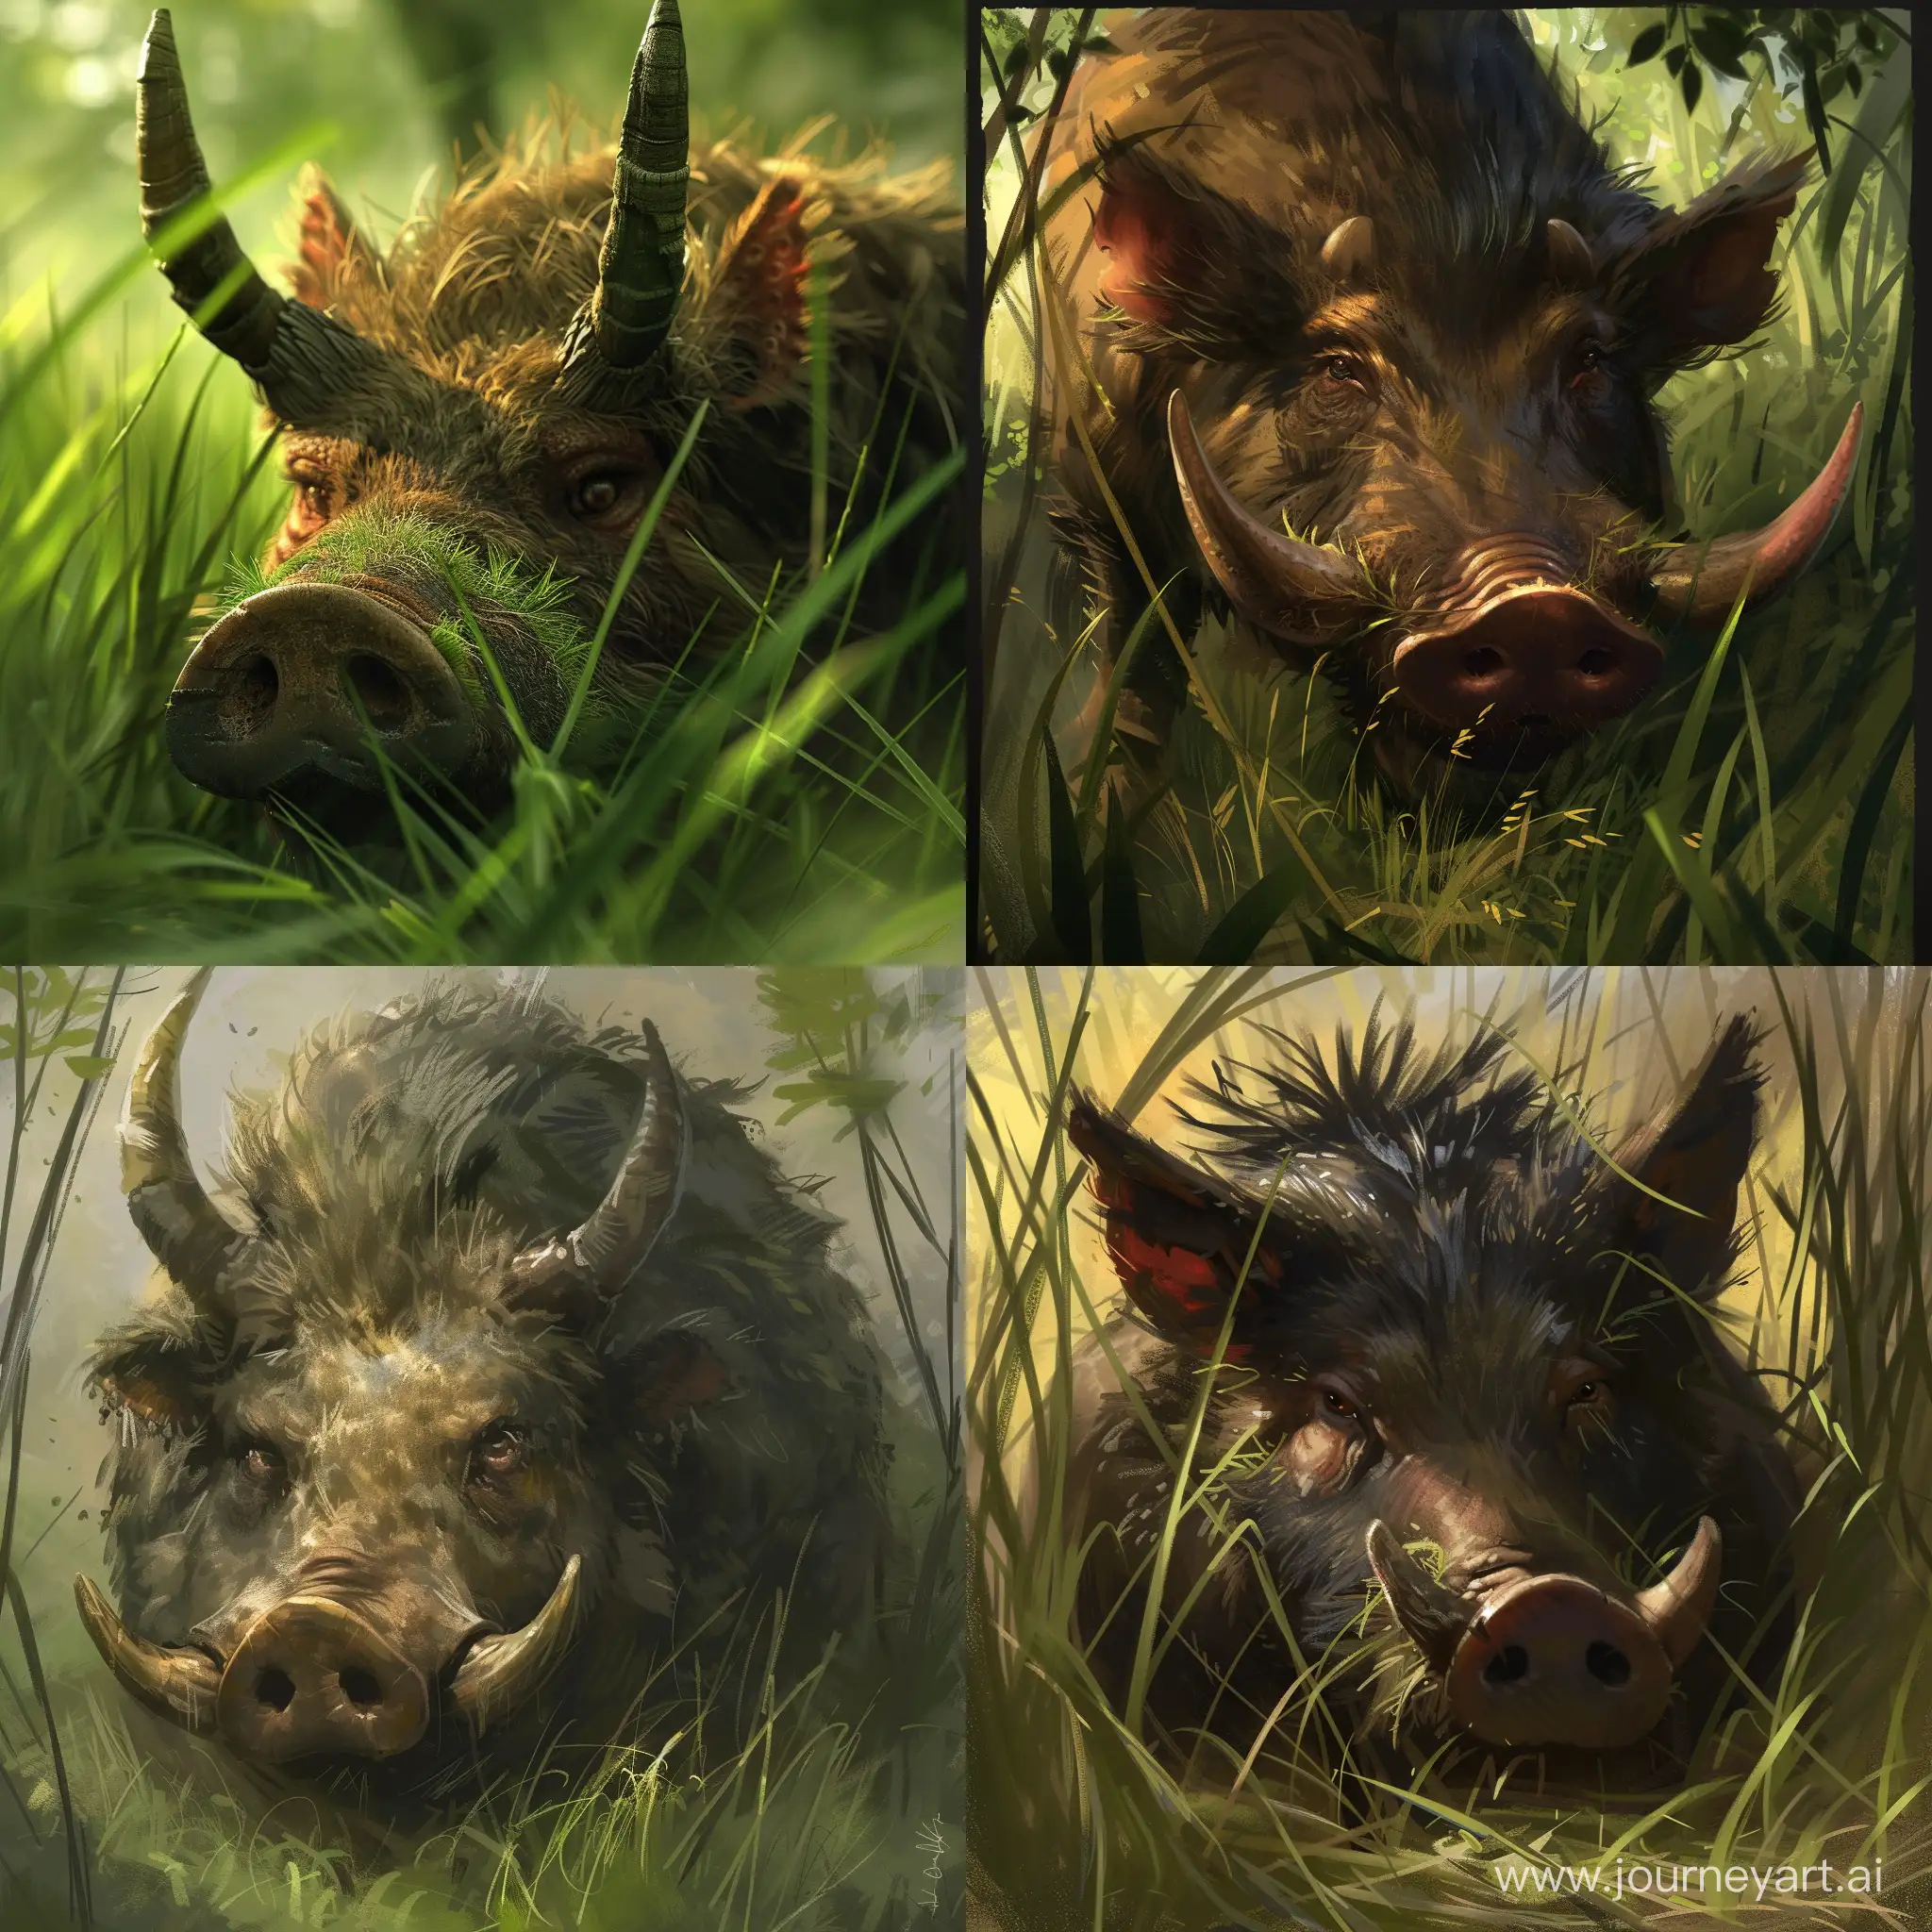 царь-рог, фантастическое животное, травоядное, рог на носу, роги на голове, прячется в траве, размером с кабана, без шерсти